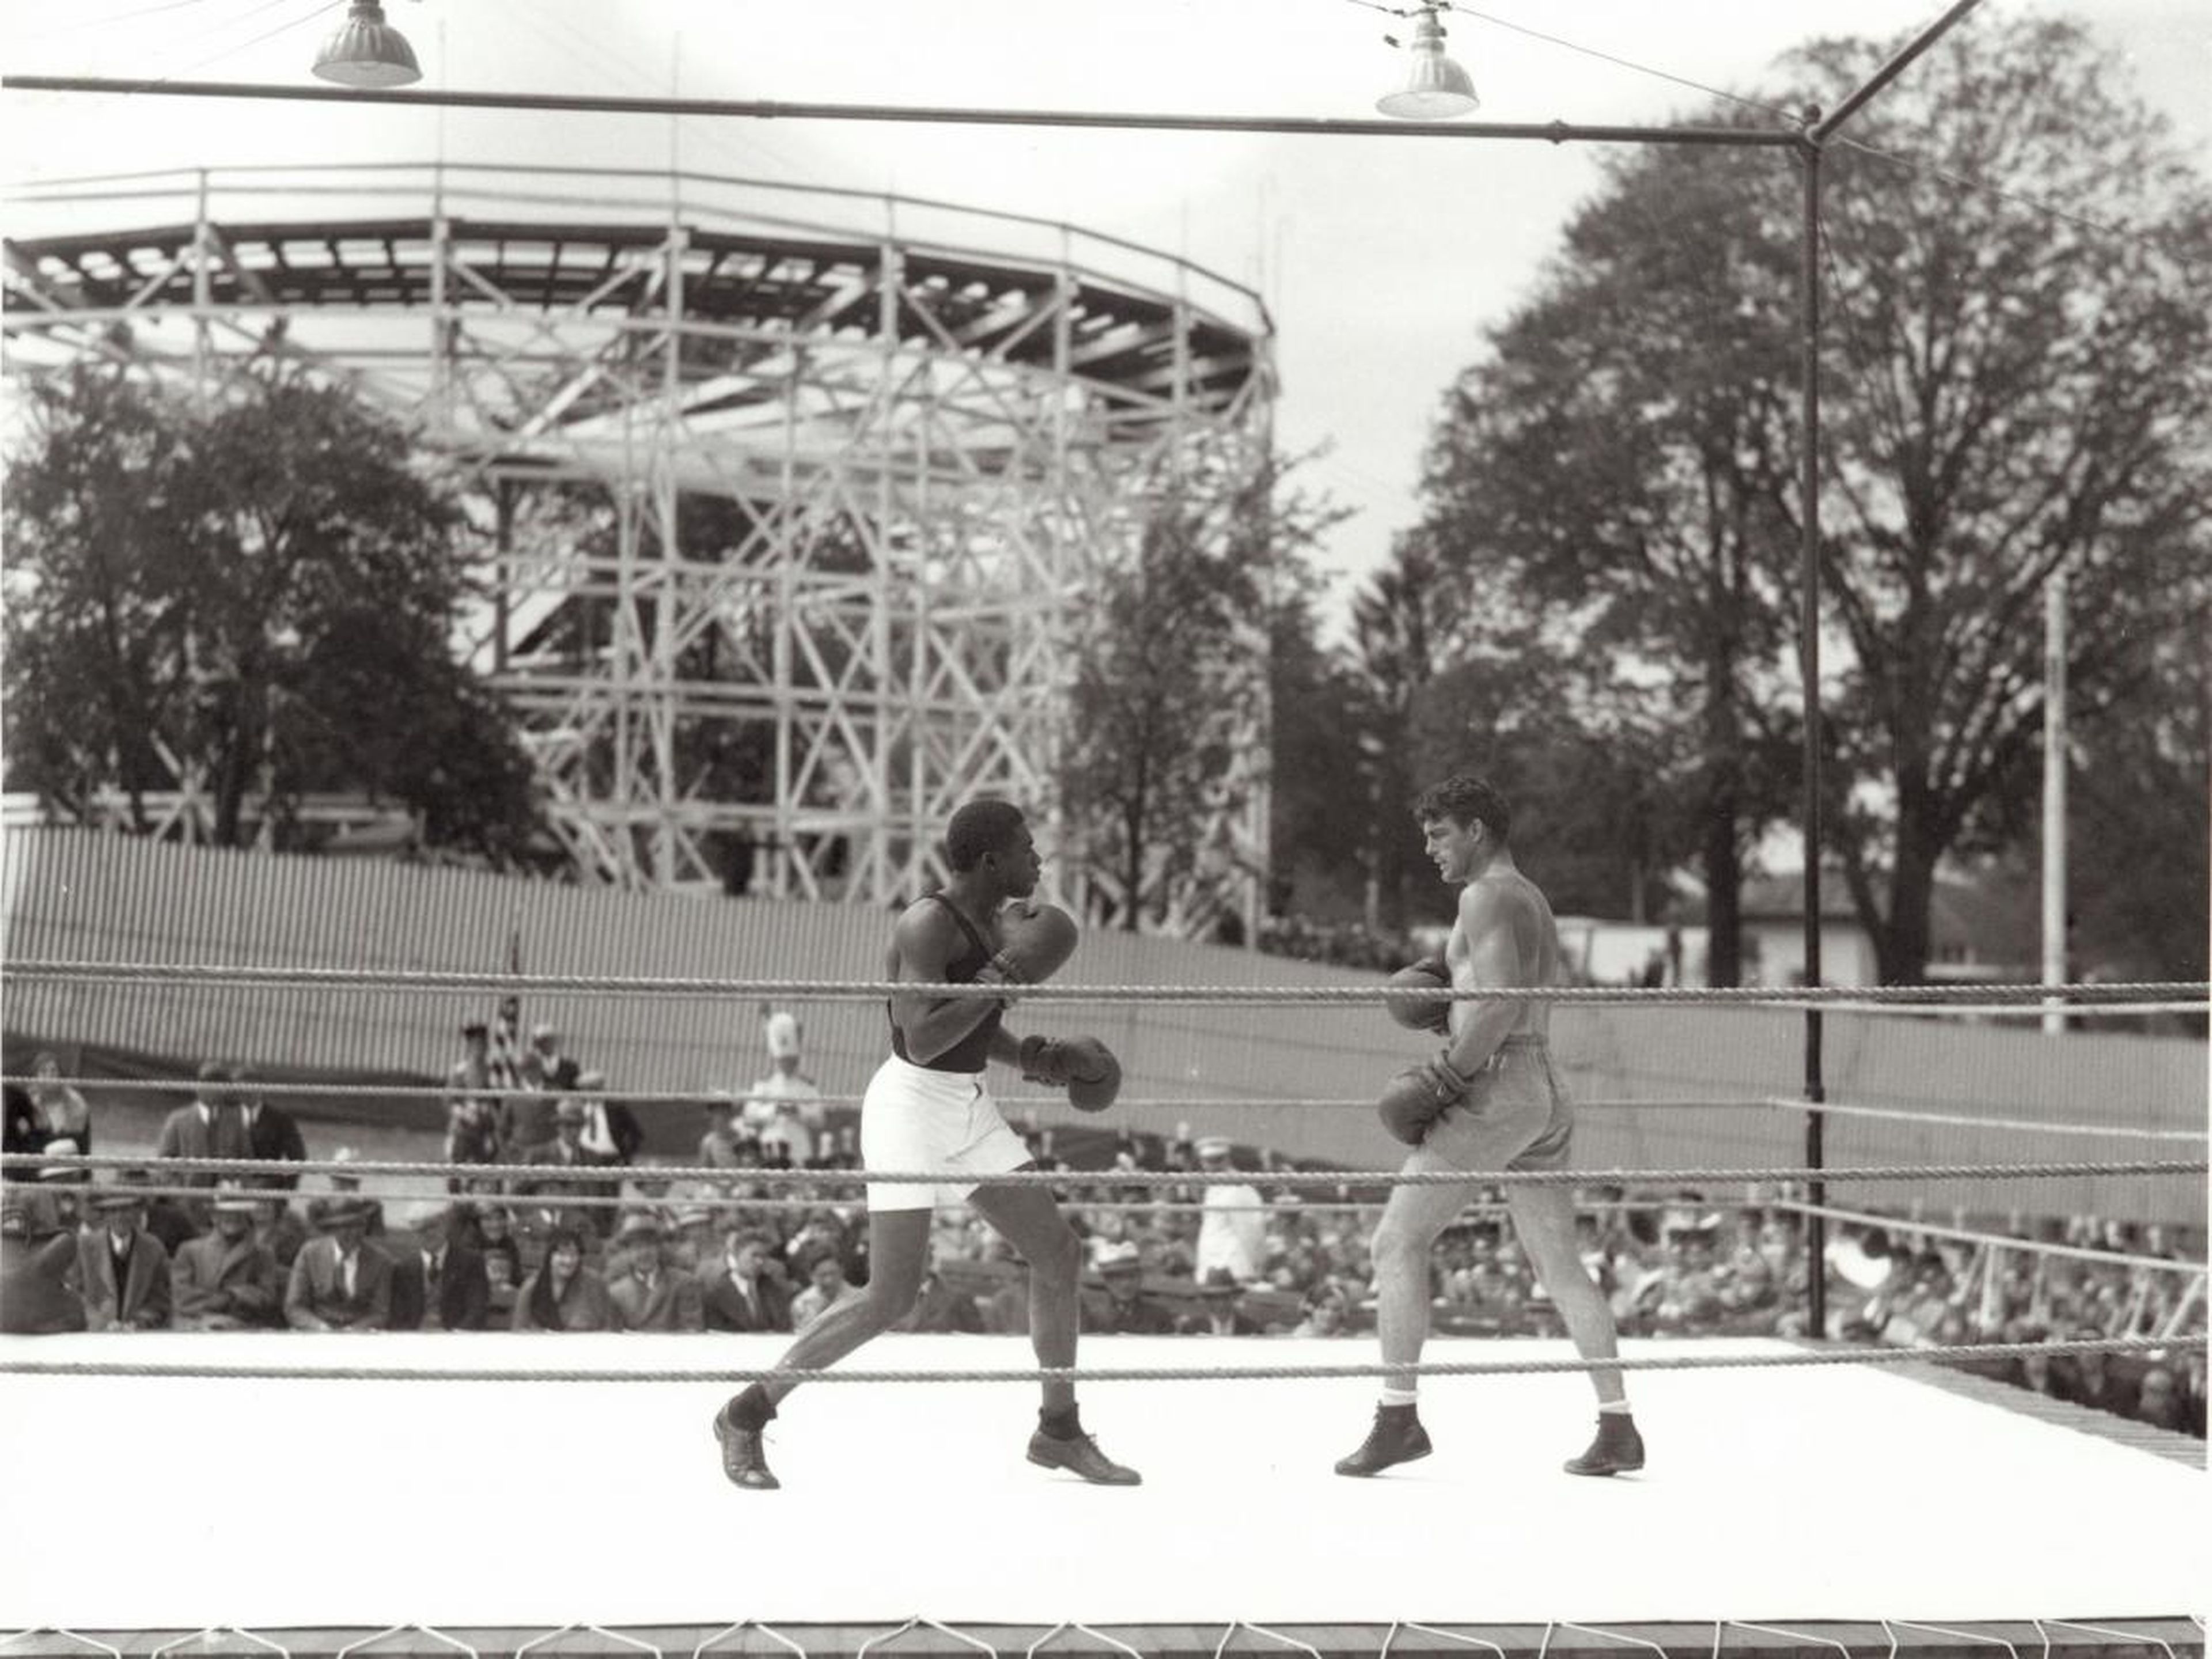 Un combate de boxeo en el parque de atracciones "Geauga Lake" en 1931.